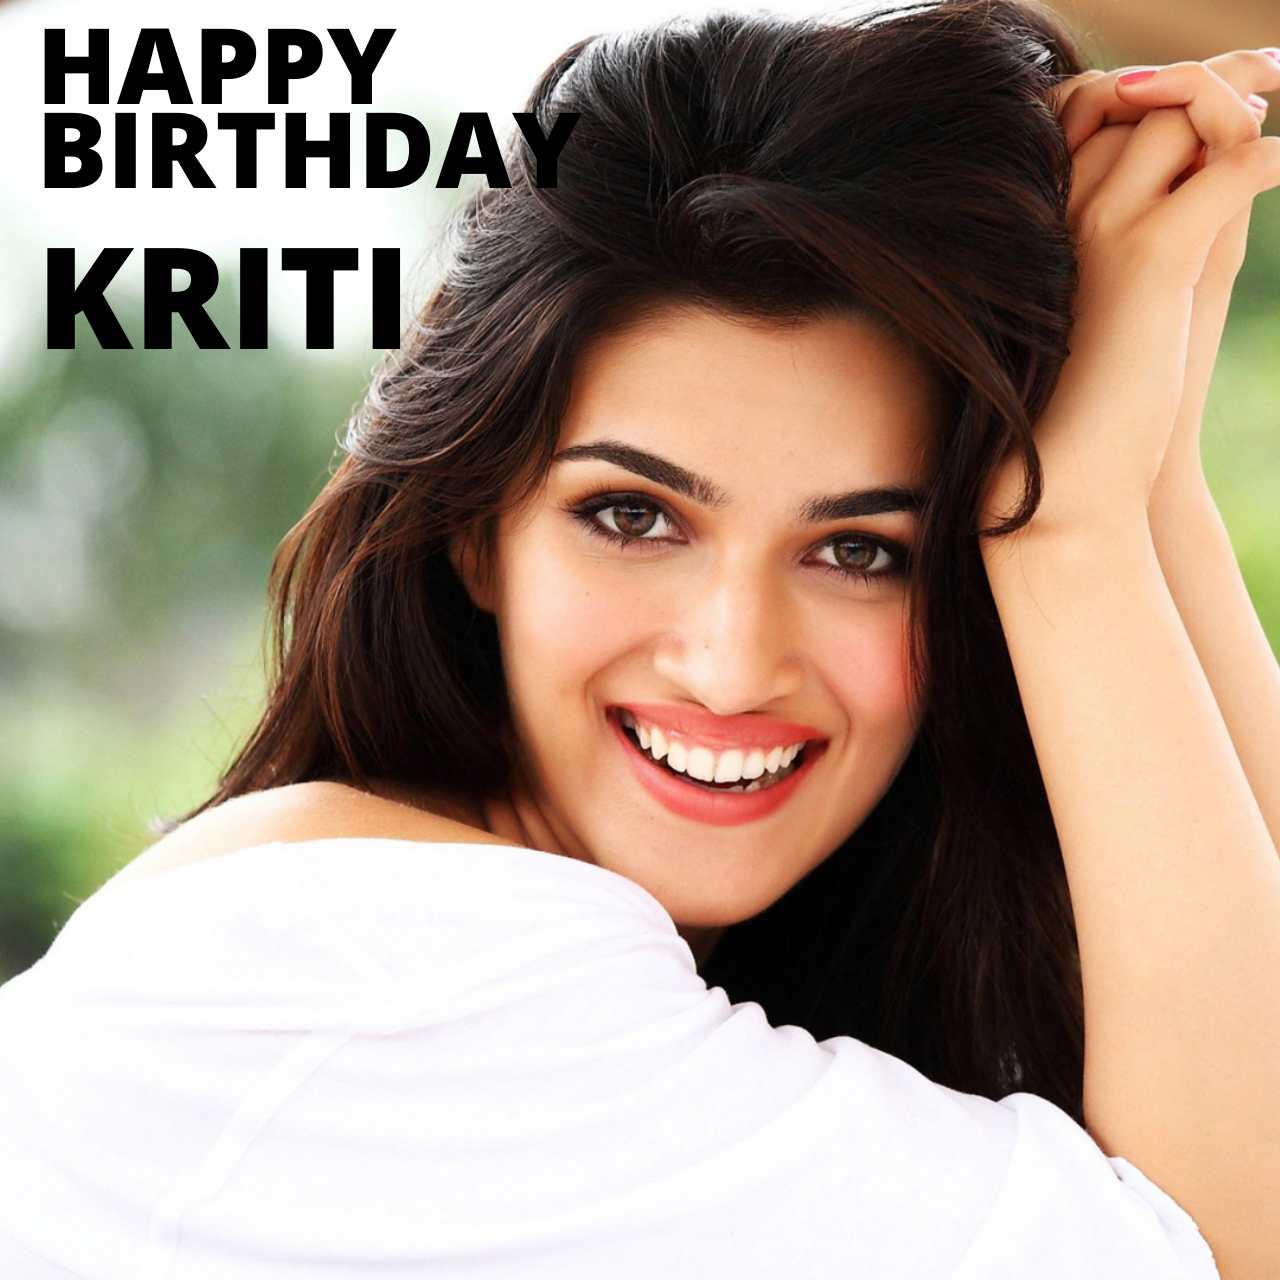 Happy Birthday Kriti Sanon: Wishes, Images, and WhatsApp Status Video ...